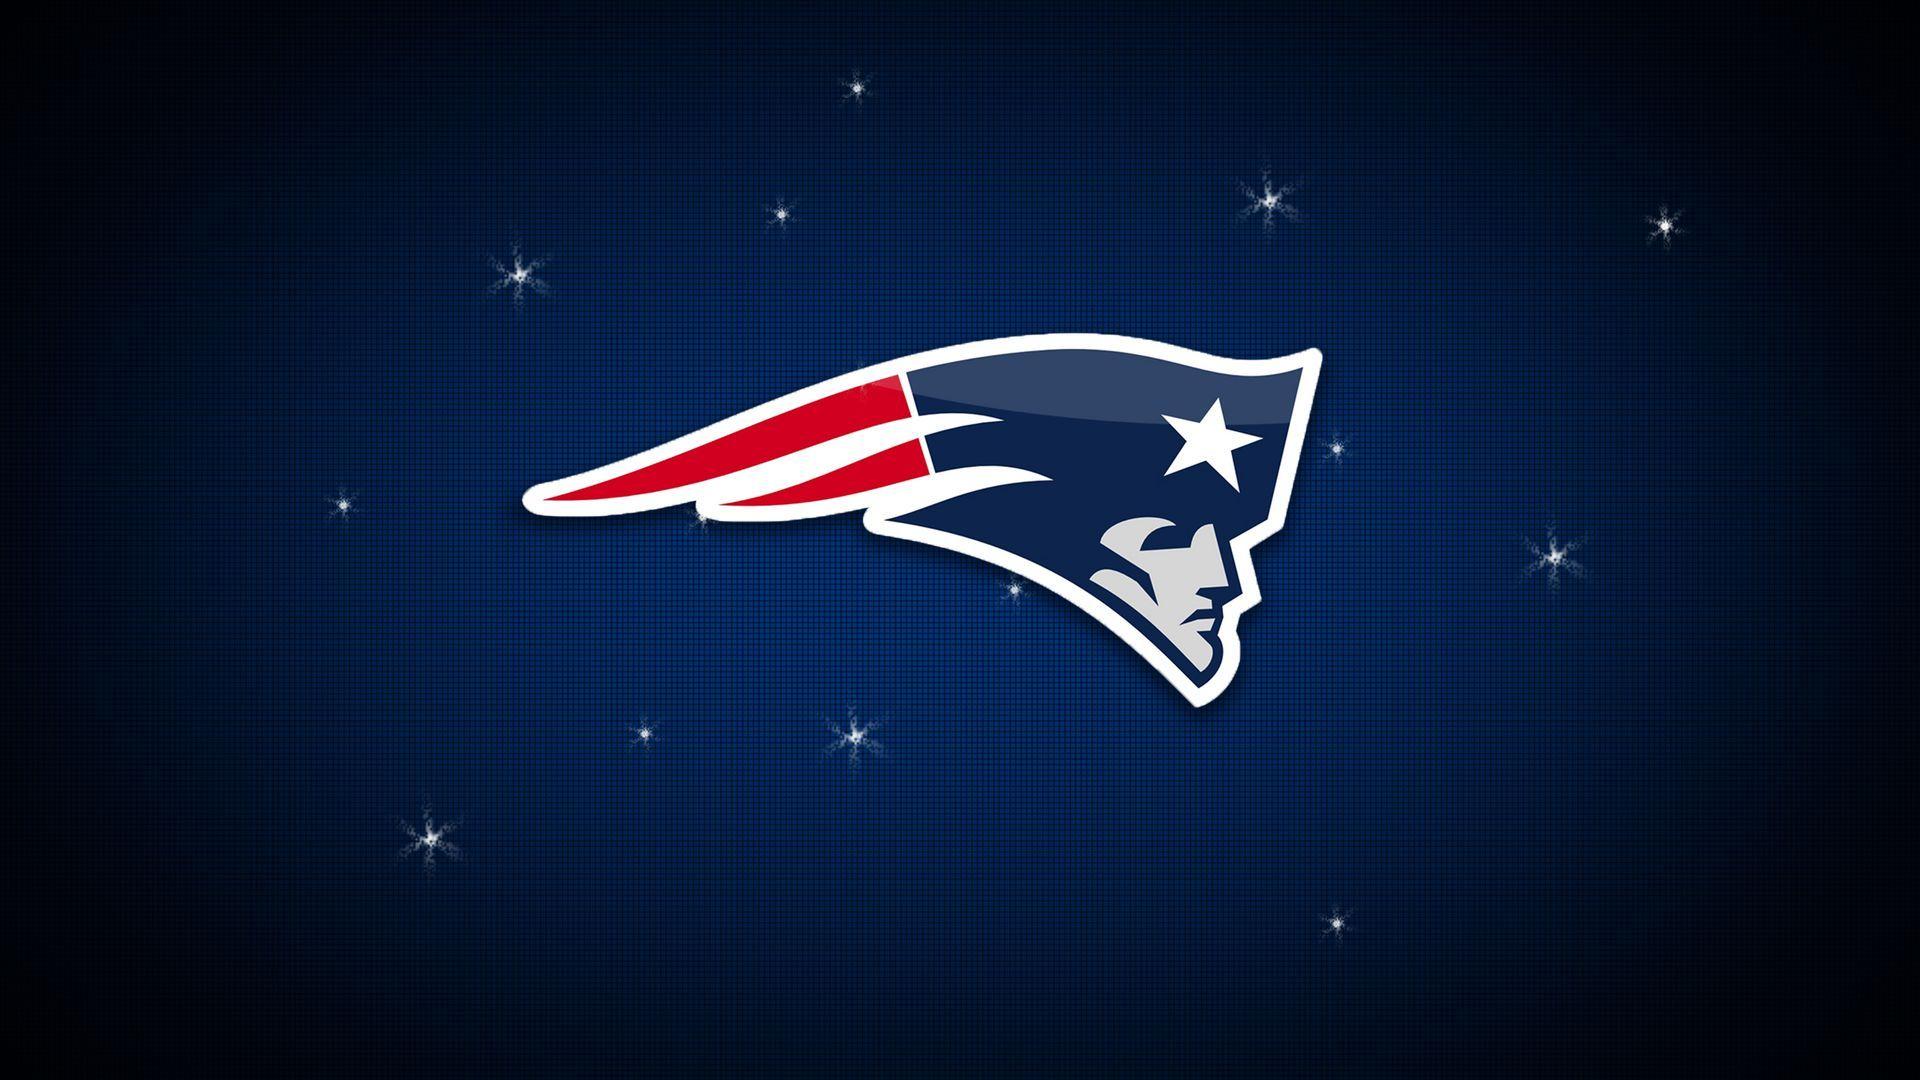 Maroon Football Logo - New England Patriots American Football Team Logo Wallpaper